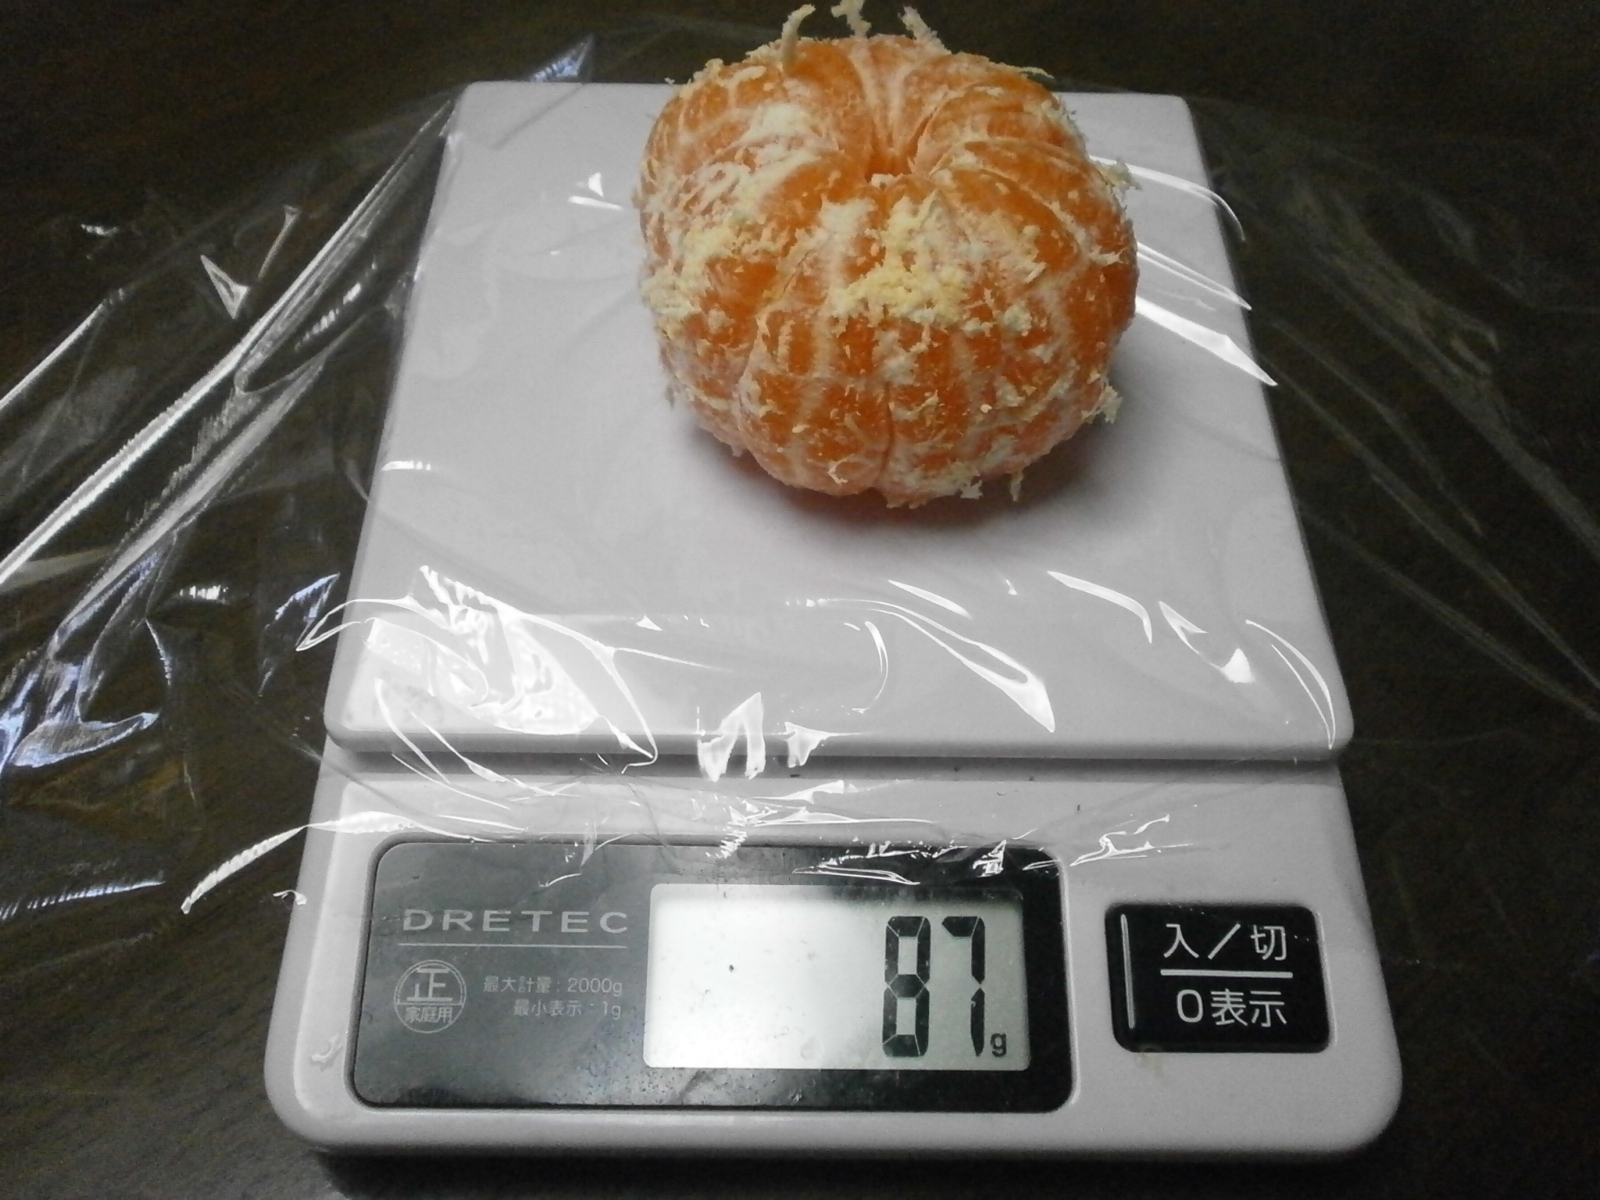 Tangerine (110g)